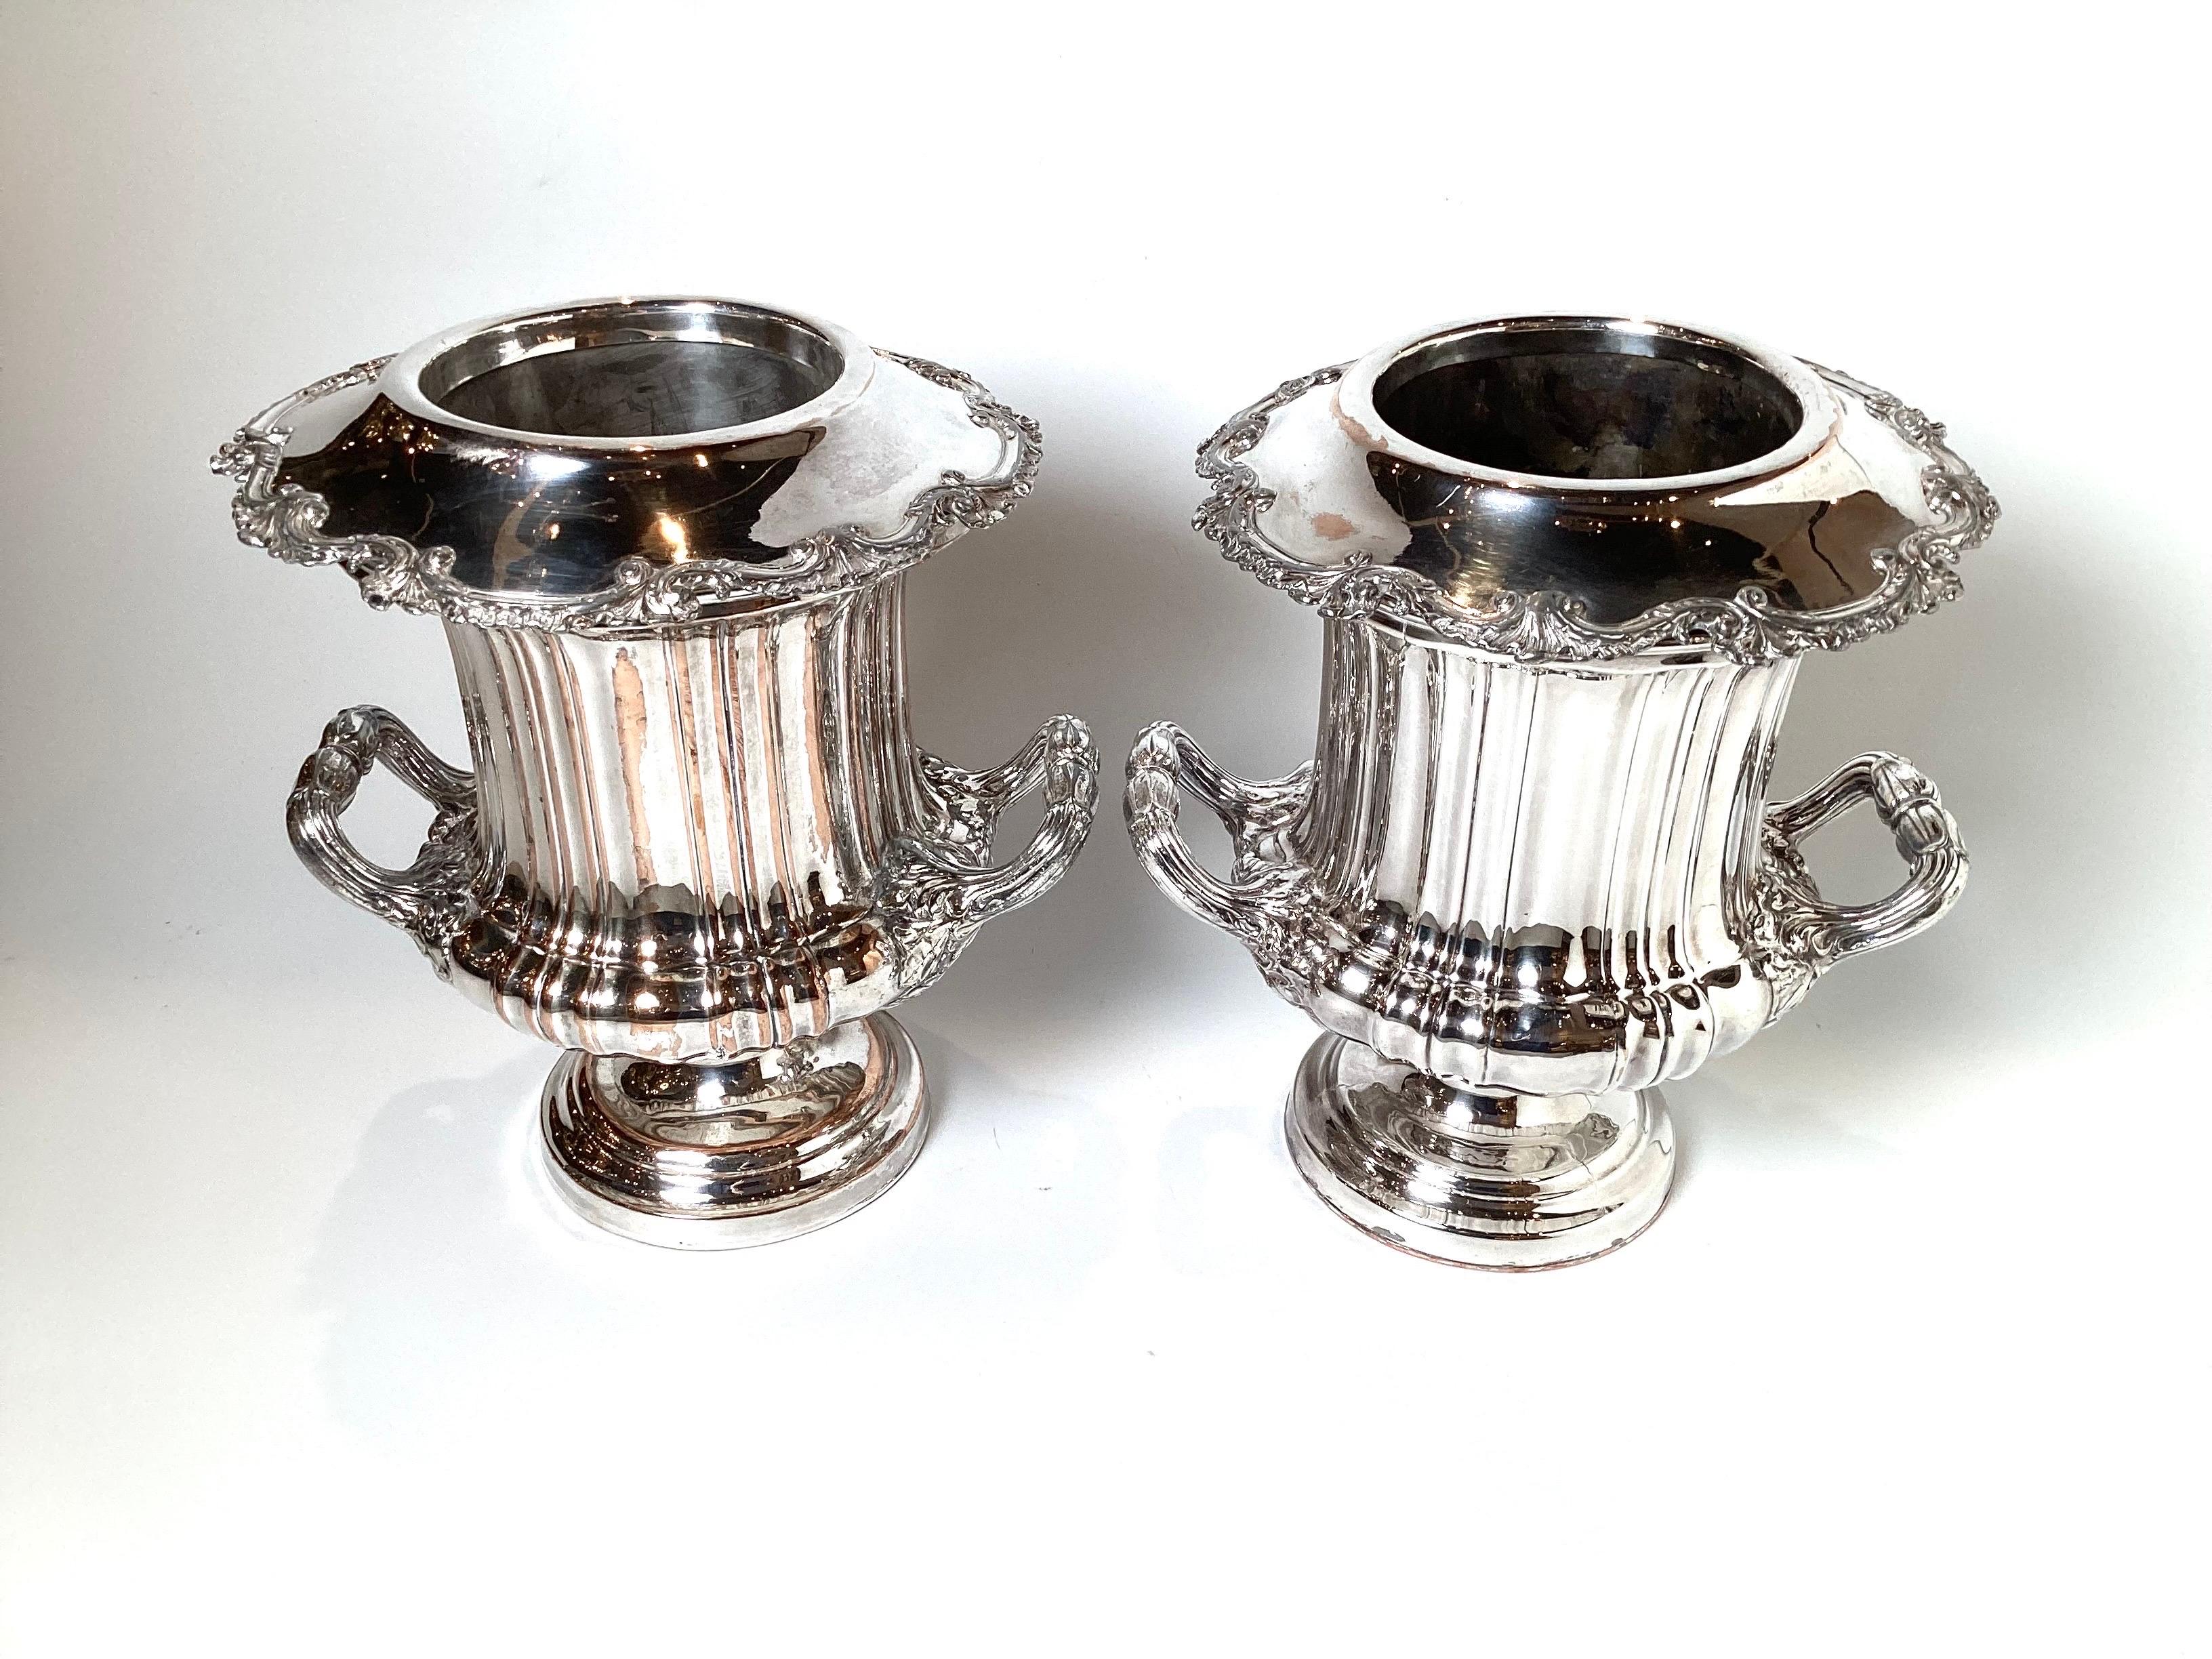 Ein feines Paar Champagnerkühler aus Silberblech auf Kupfer. Die Campana-Urnenform mit dreiteiliger Auskleidung. Es gibt Kupfer bluten durch die Silberplatte, aber immer noch sehr nützlich und elegant.